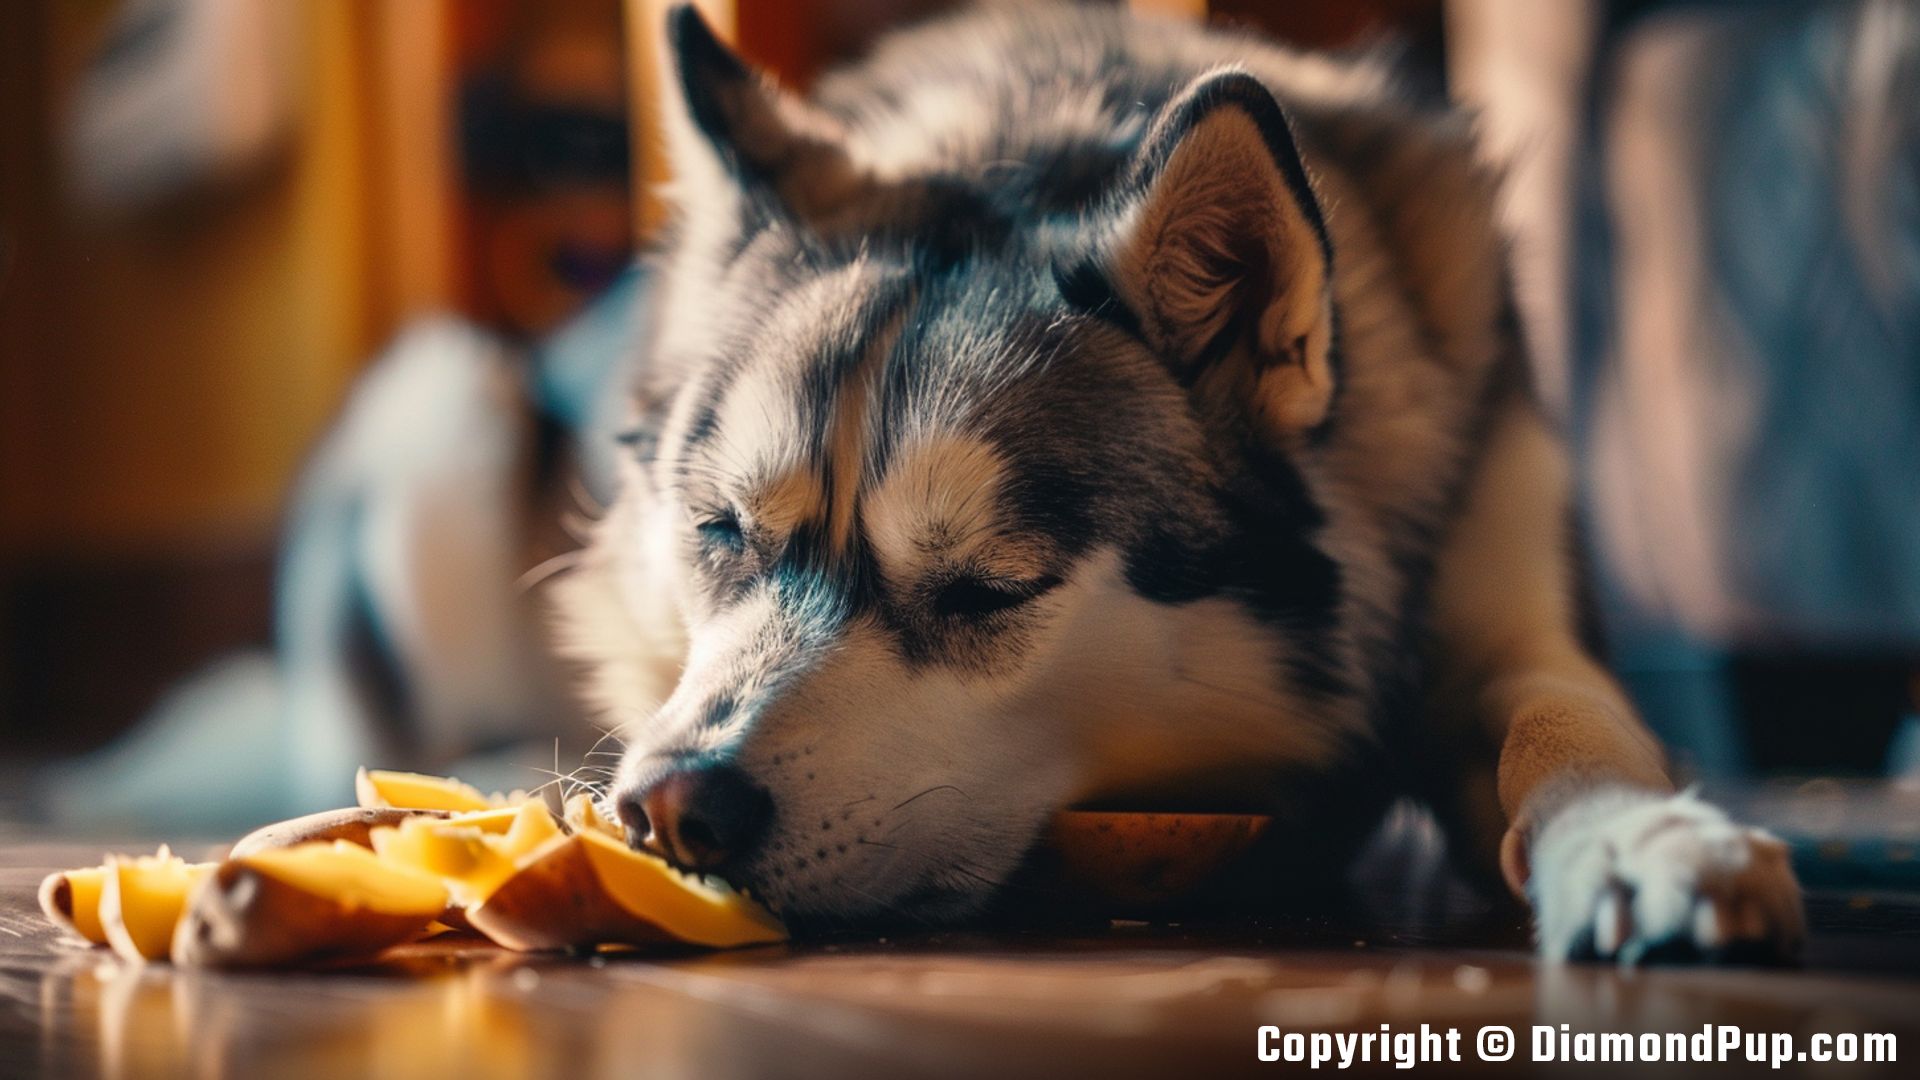 Photograph of an Adorable Husky Snacking on Potato